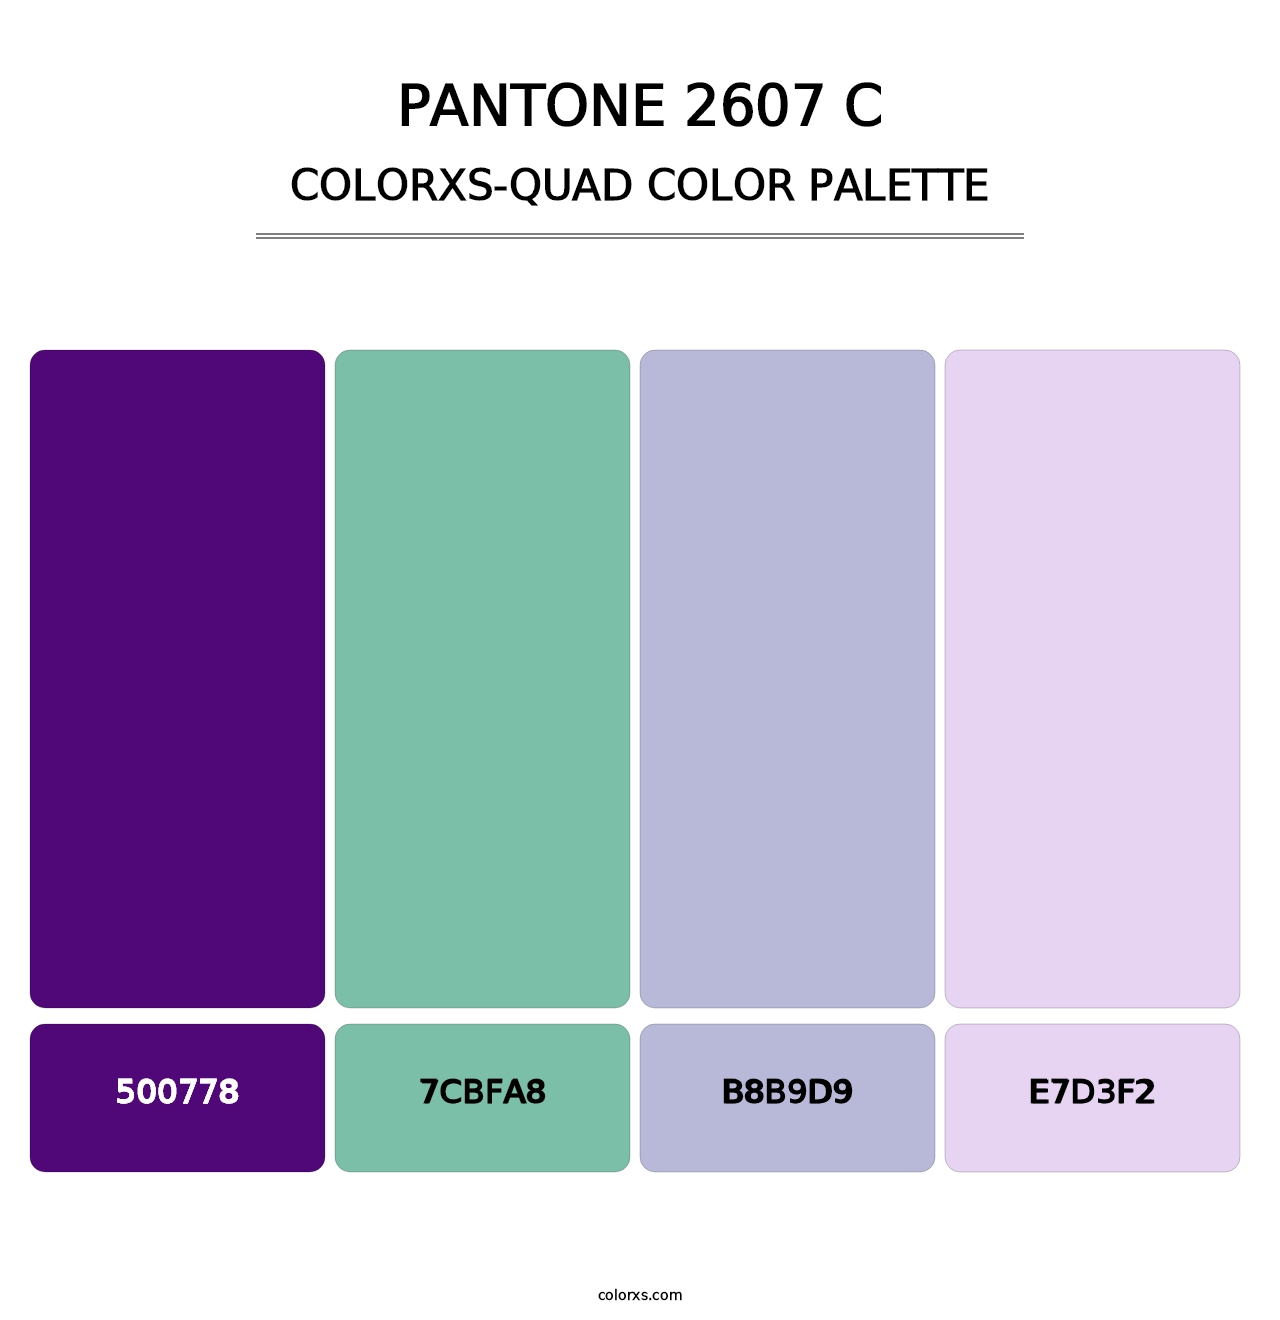 PANTONE 2607 C - Colorxs Quad Palette